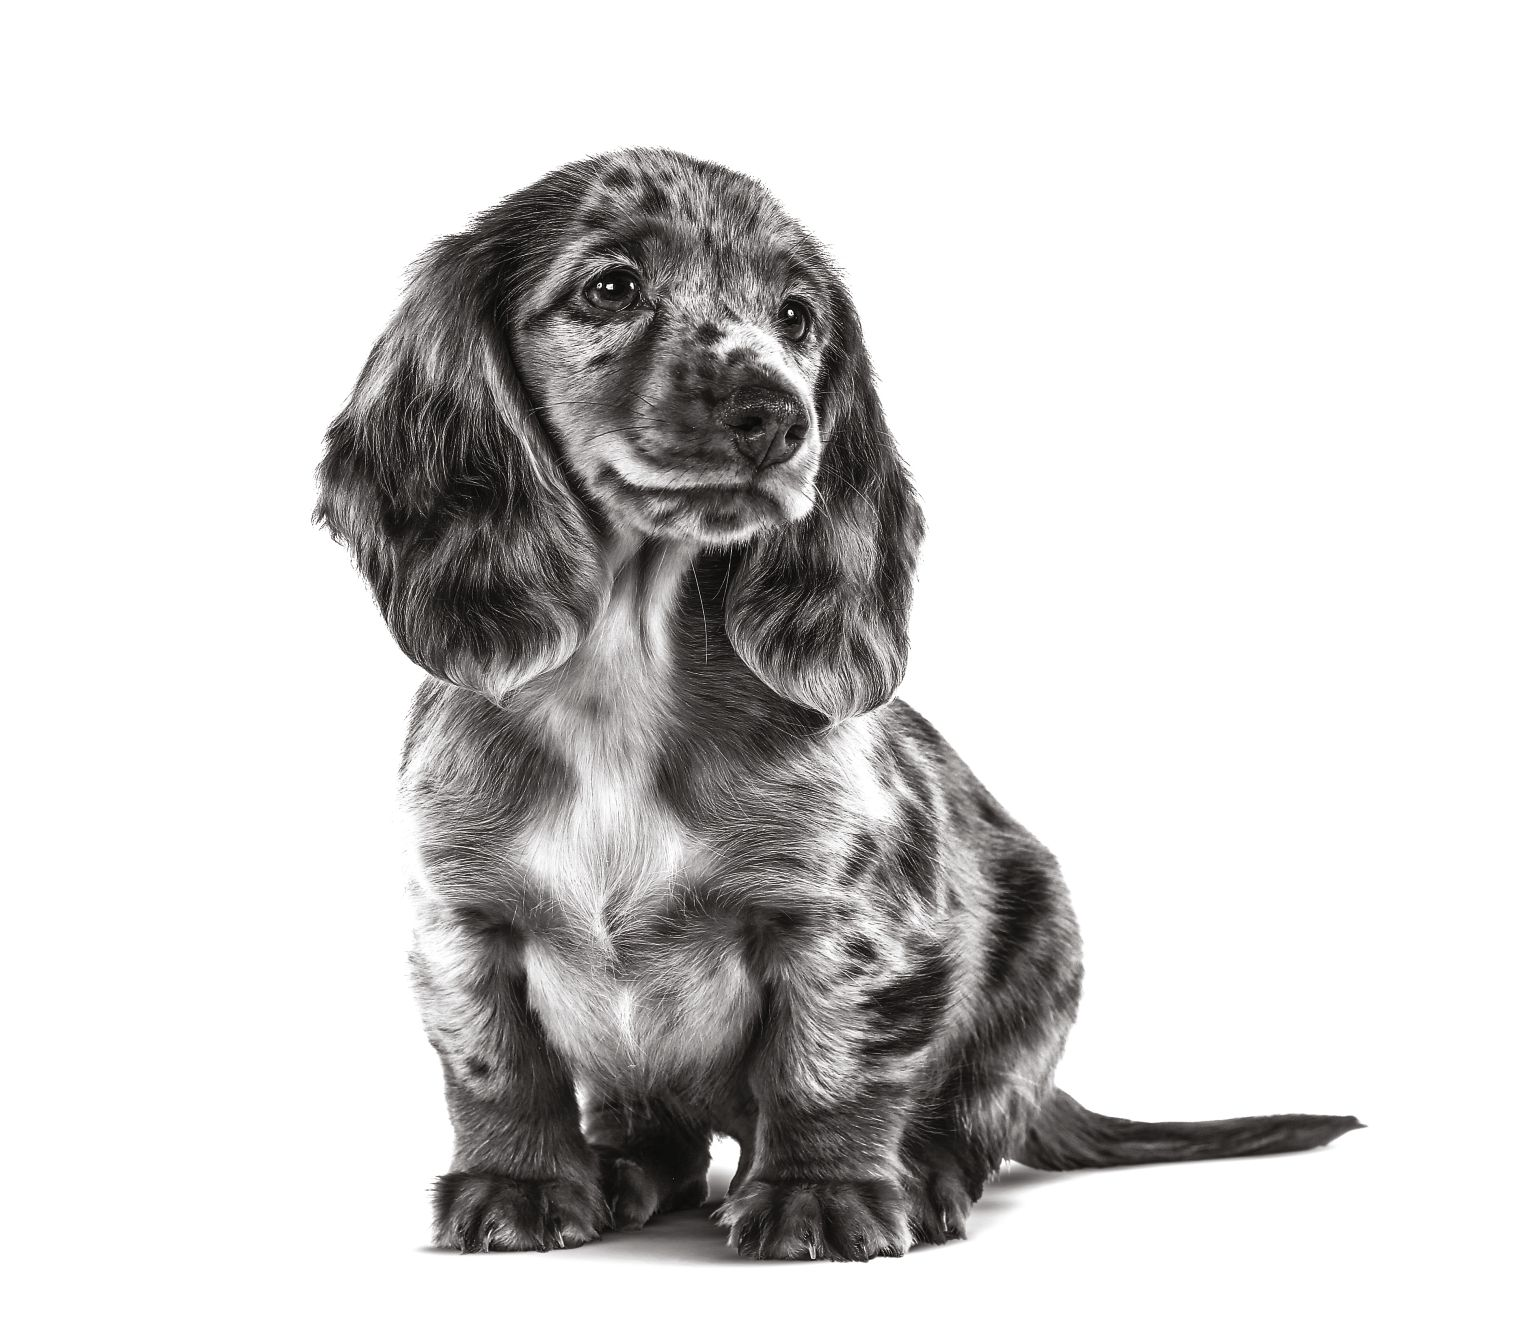 Dachshund puppy in black and white